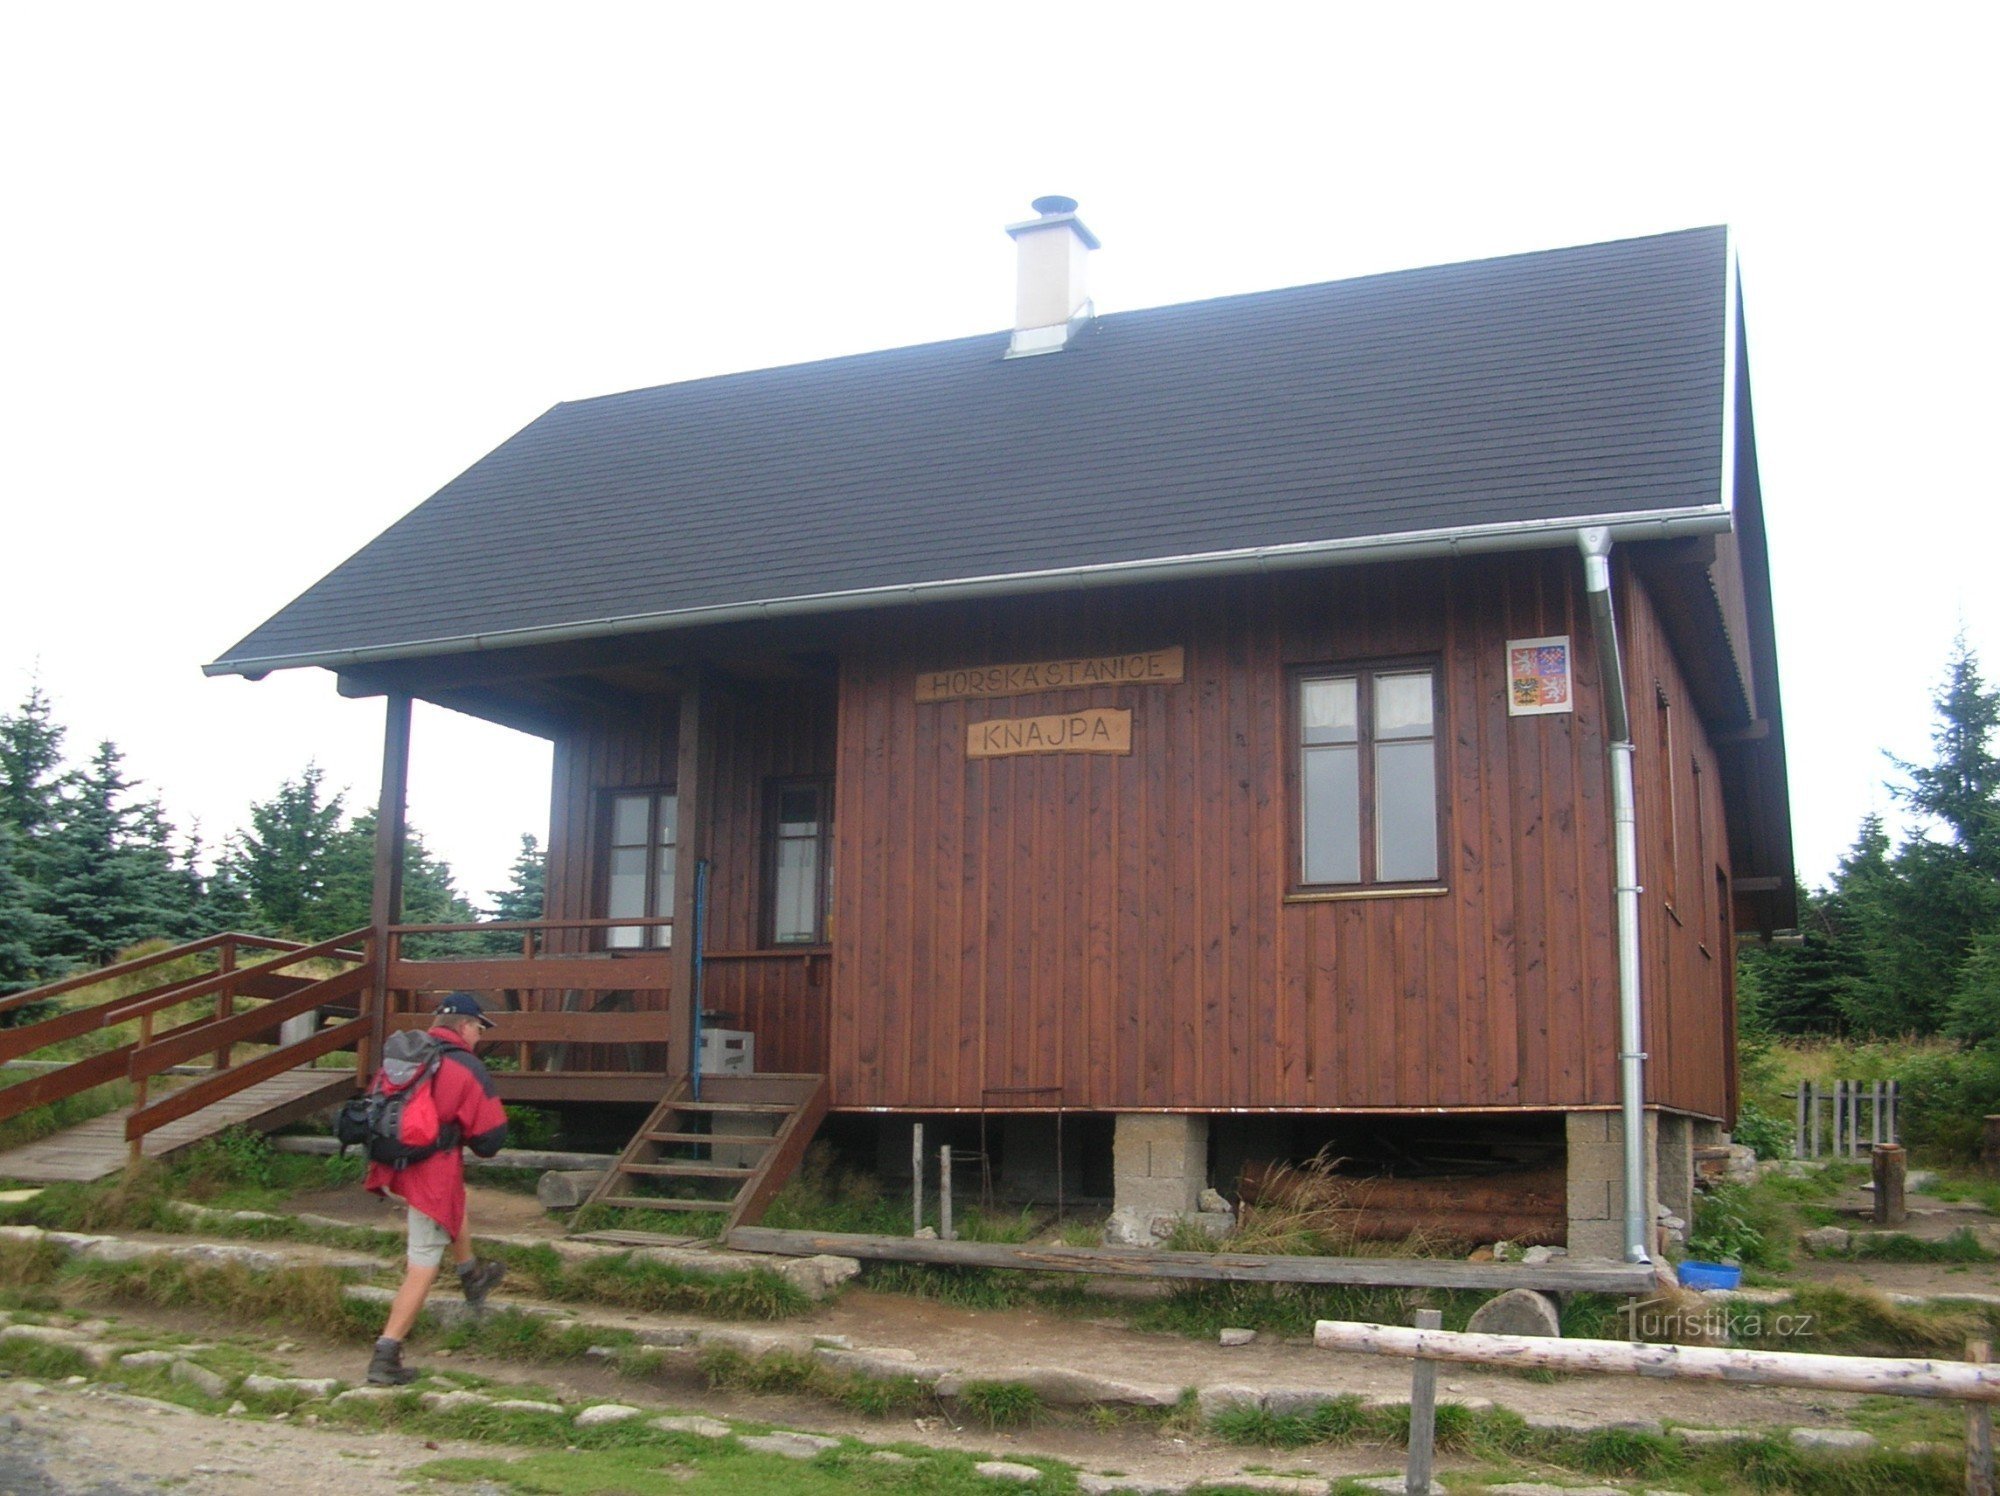 Estação da montanha Knajpa